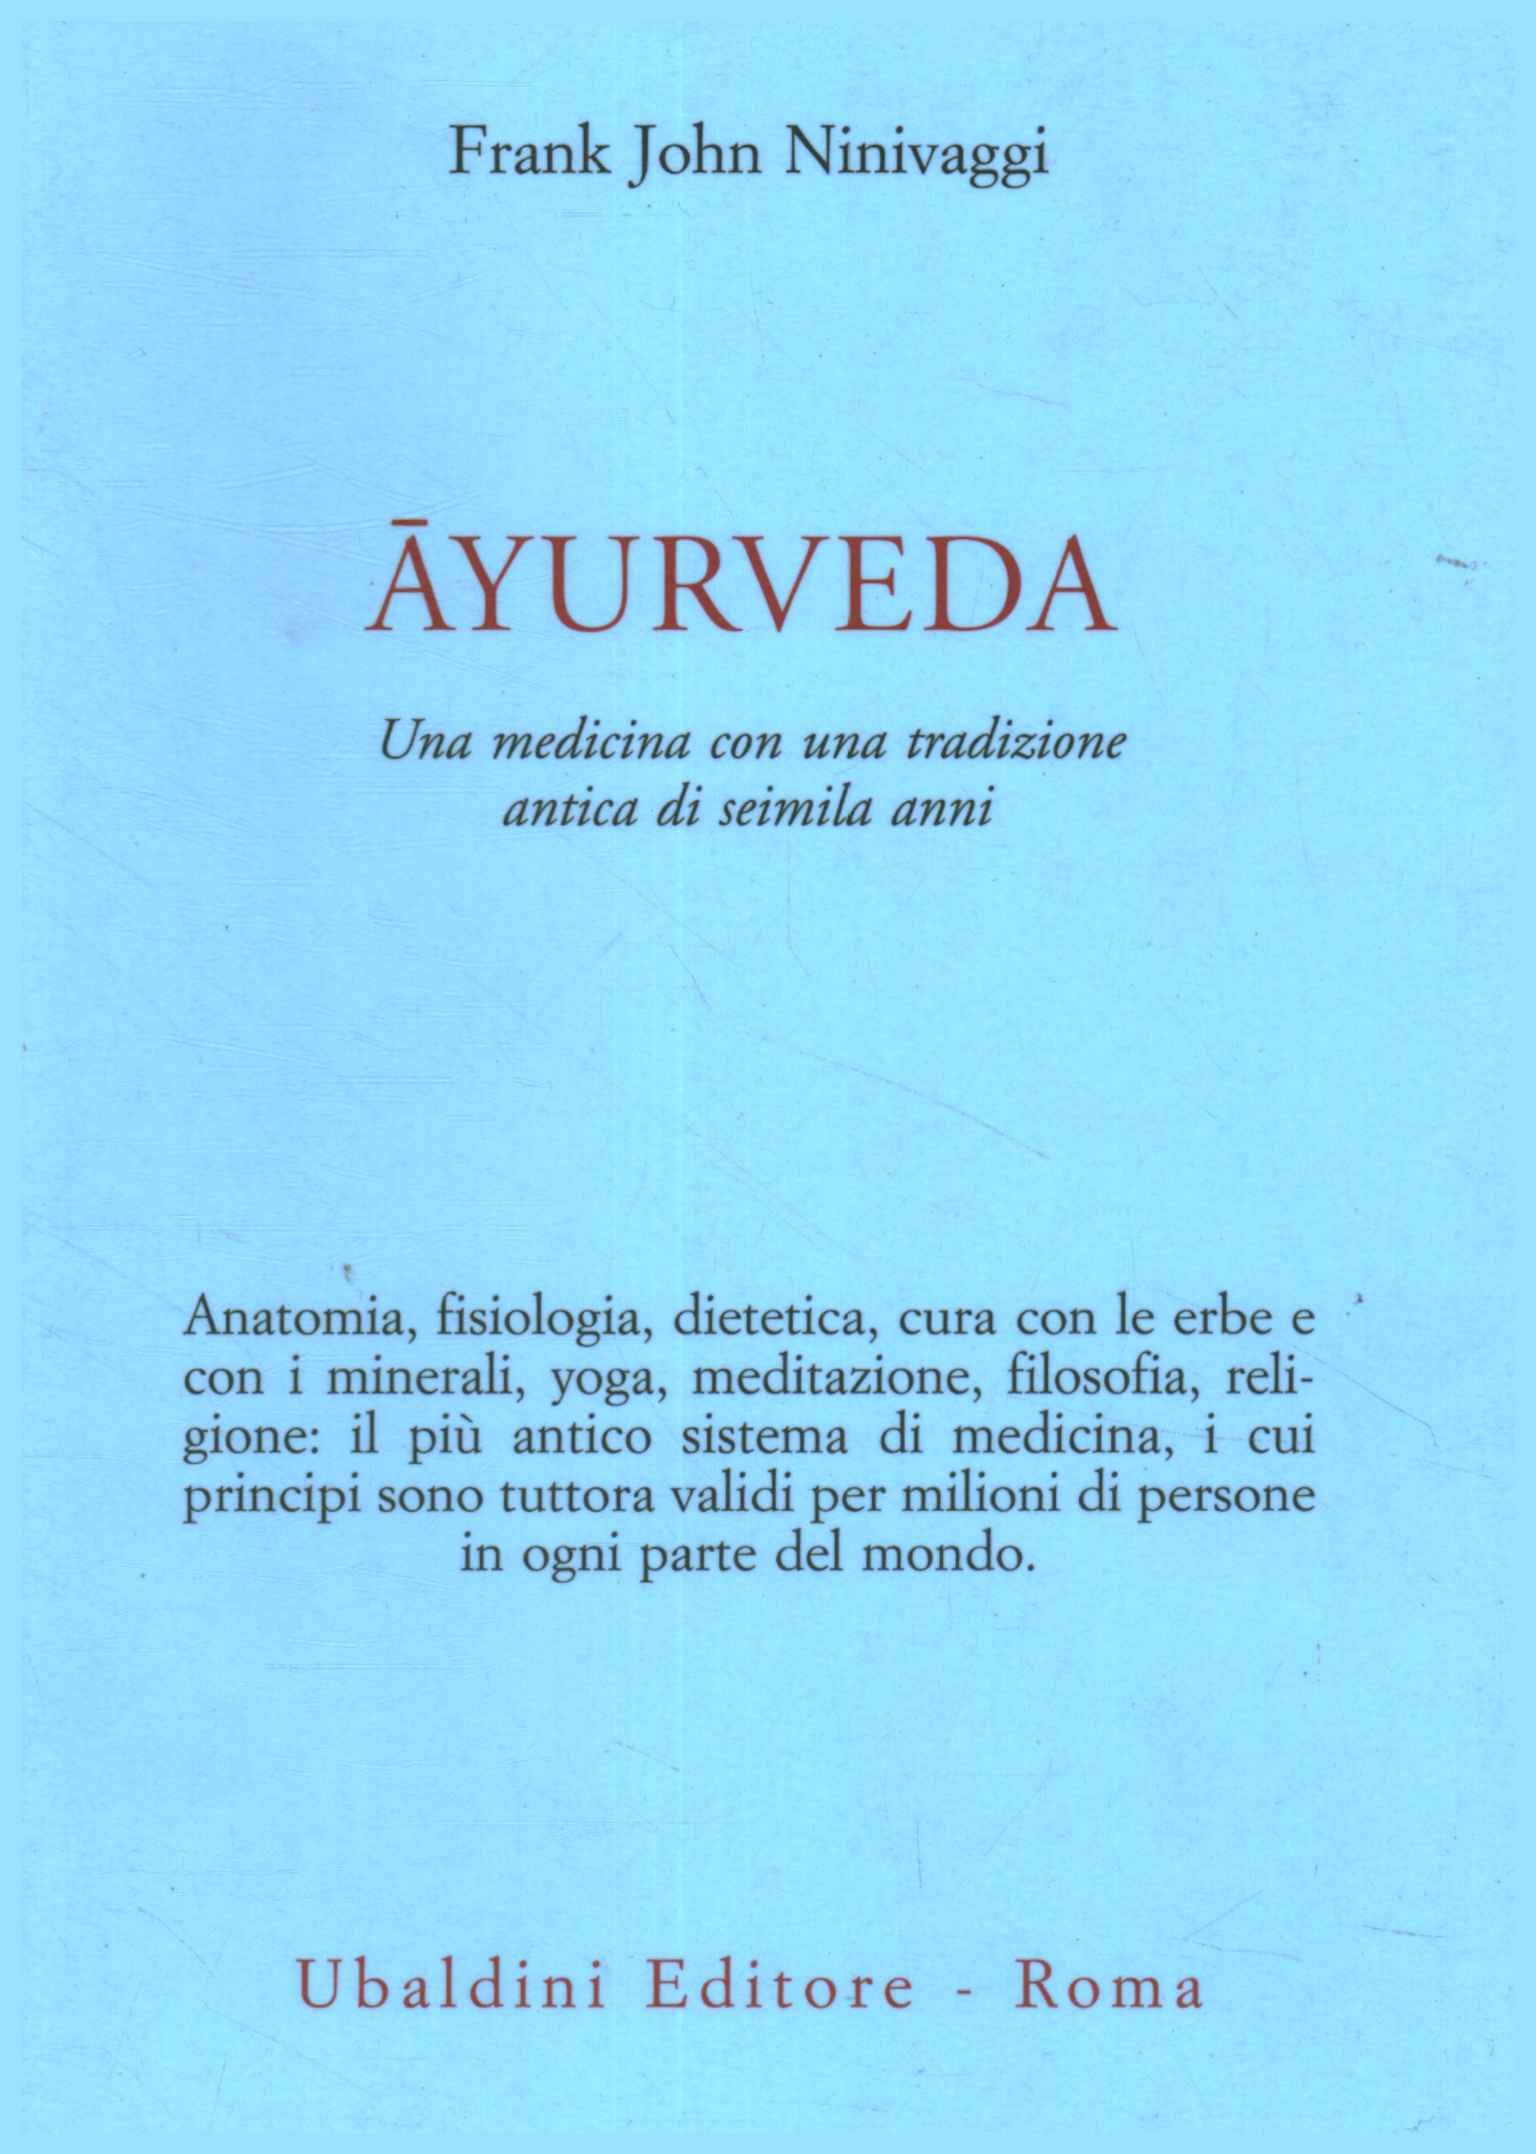 Ayurveda. A medicine with a tradition